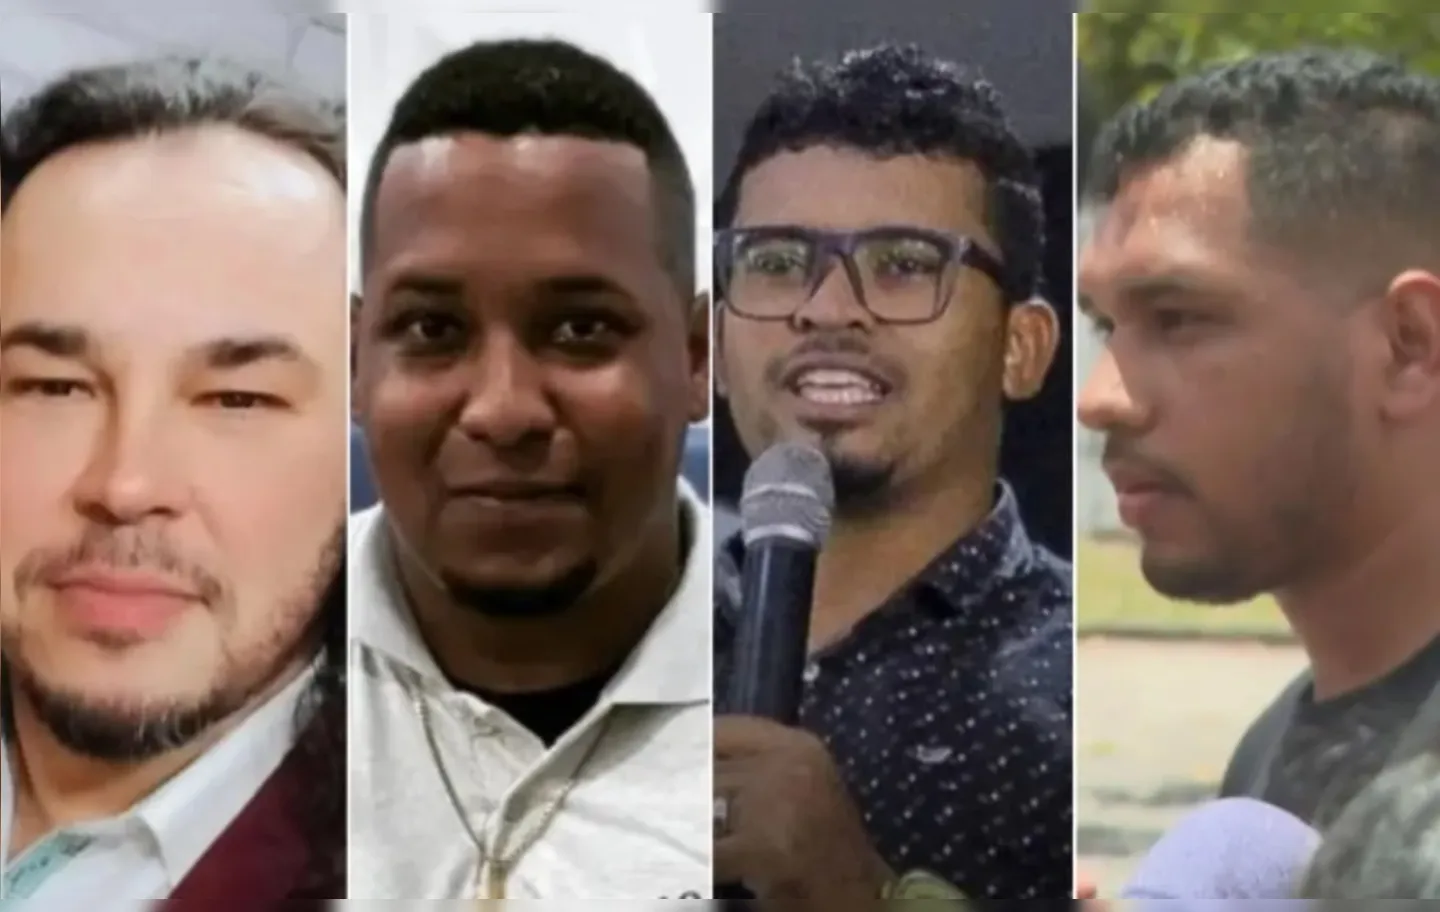 Ederlan Mariano, Gideão Duarte, Victor Gabriel e Bispo Zadoque são suspeitos de envolvimento da morte da cantora